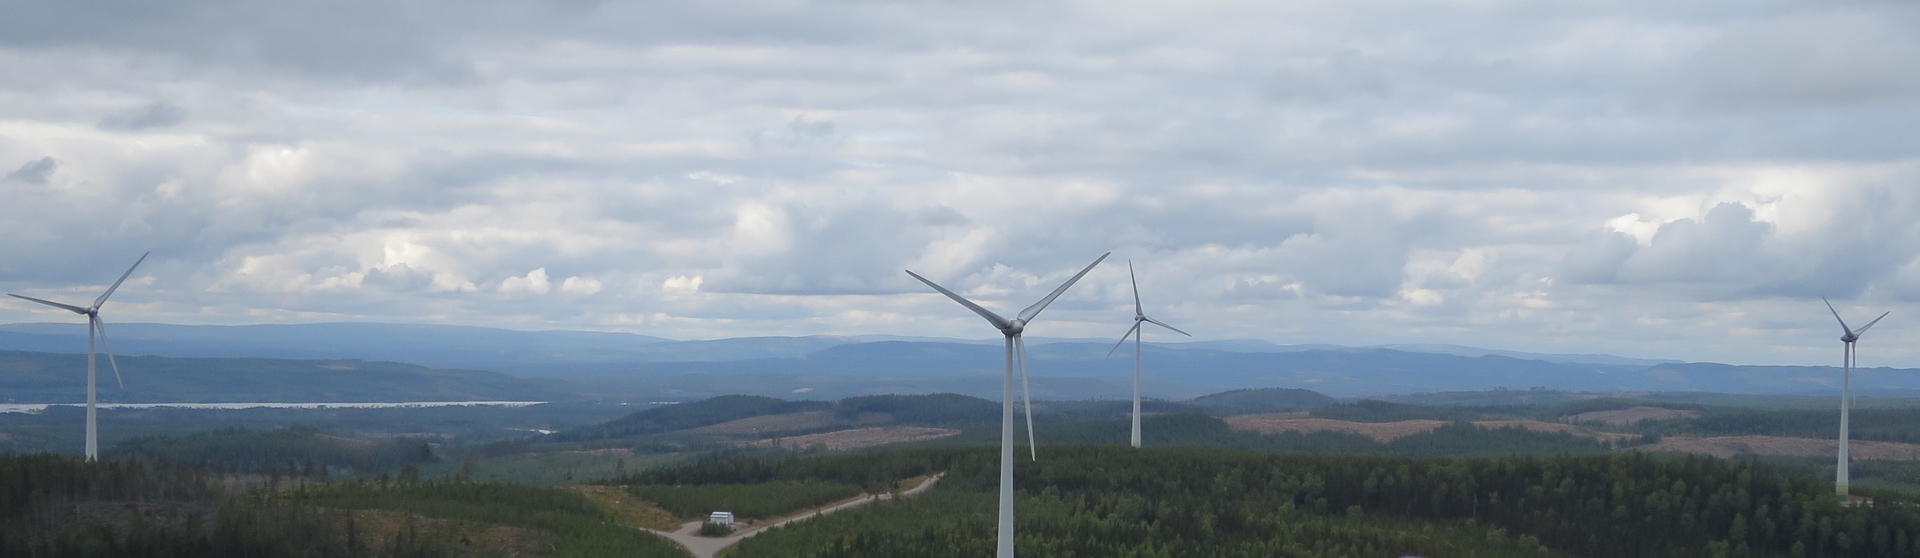 Rätan - Digerbergets vindkraftspark i Bergs kommun med 5 verk levererar cirka 24 GWh/år.